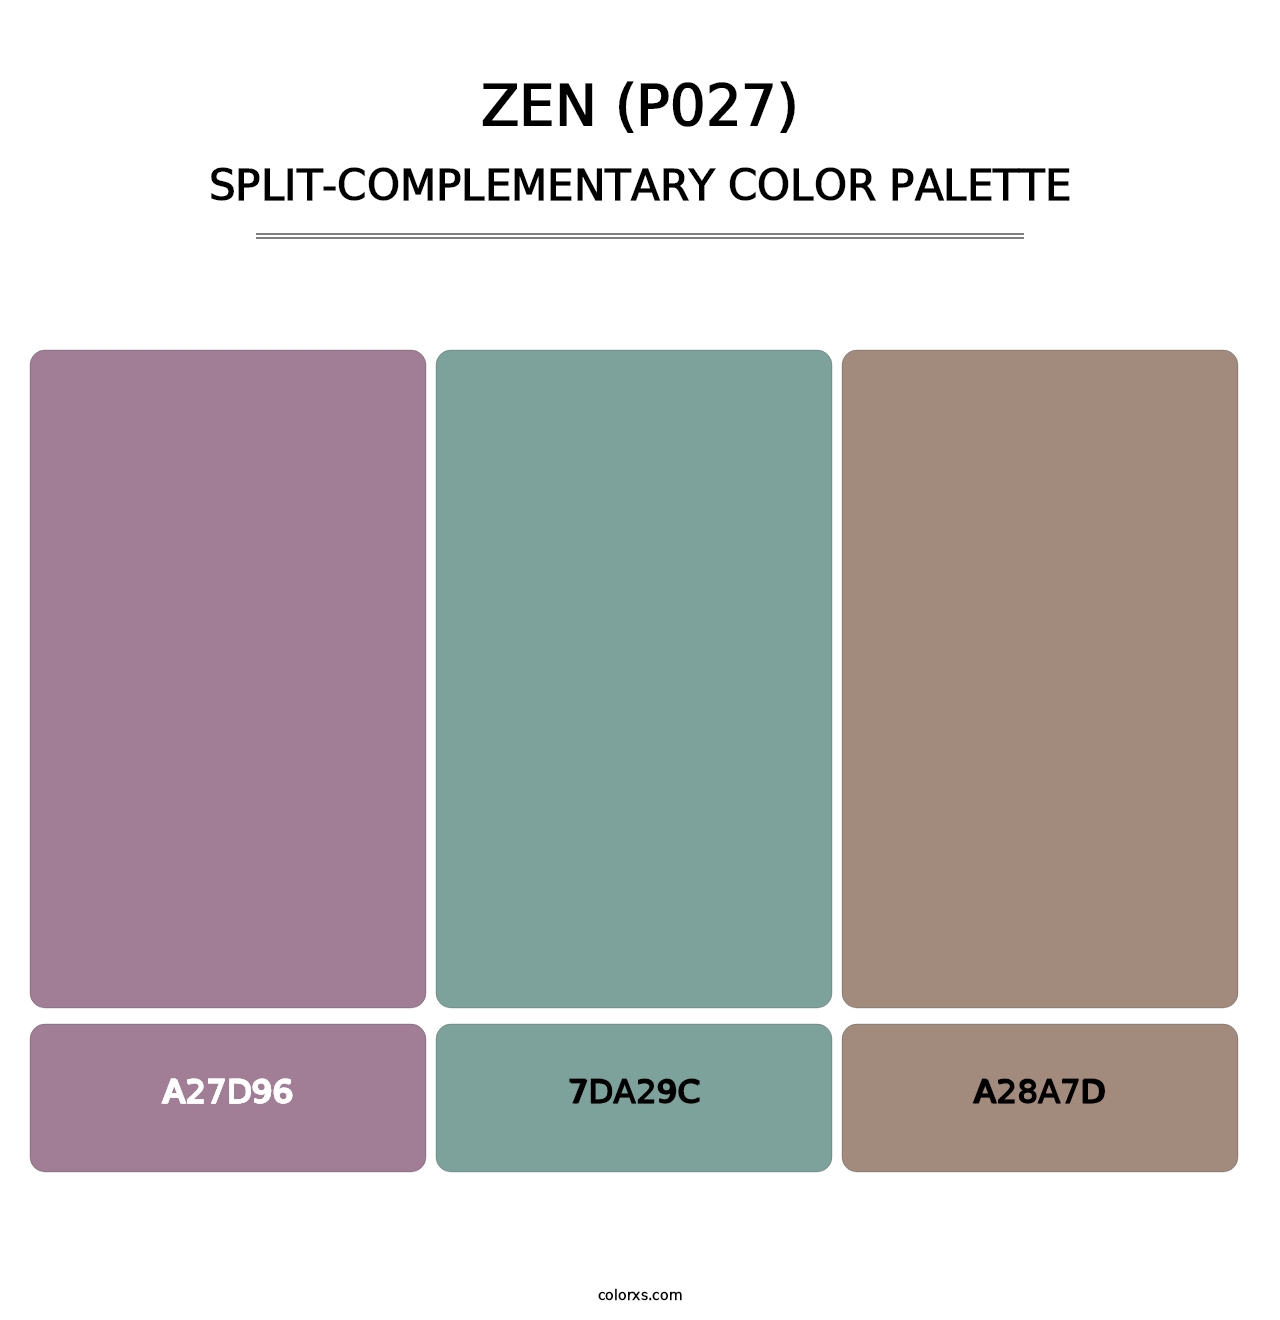 Zen (P027) - Split-Complementary Color Palette